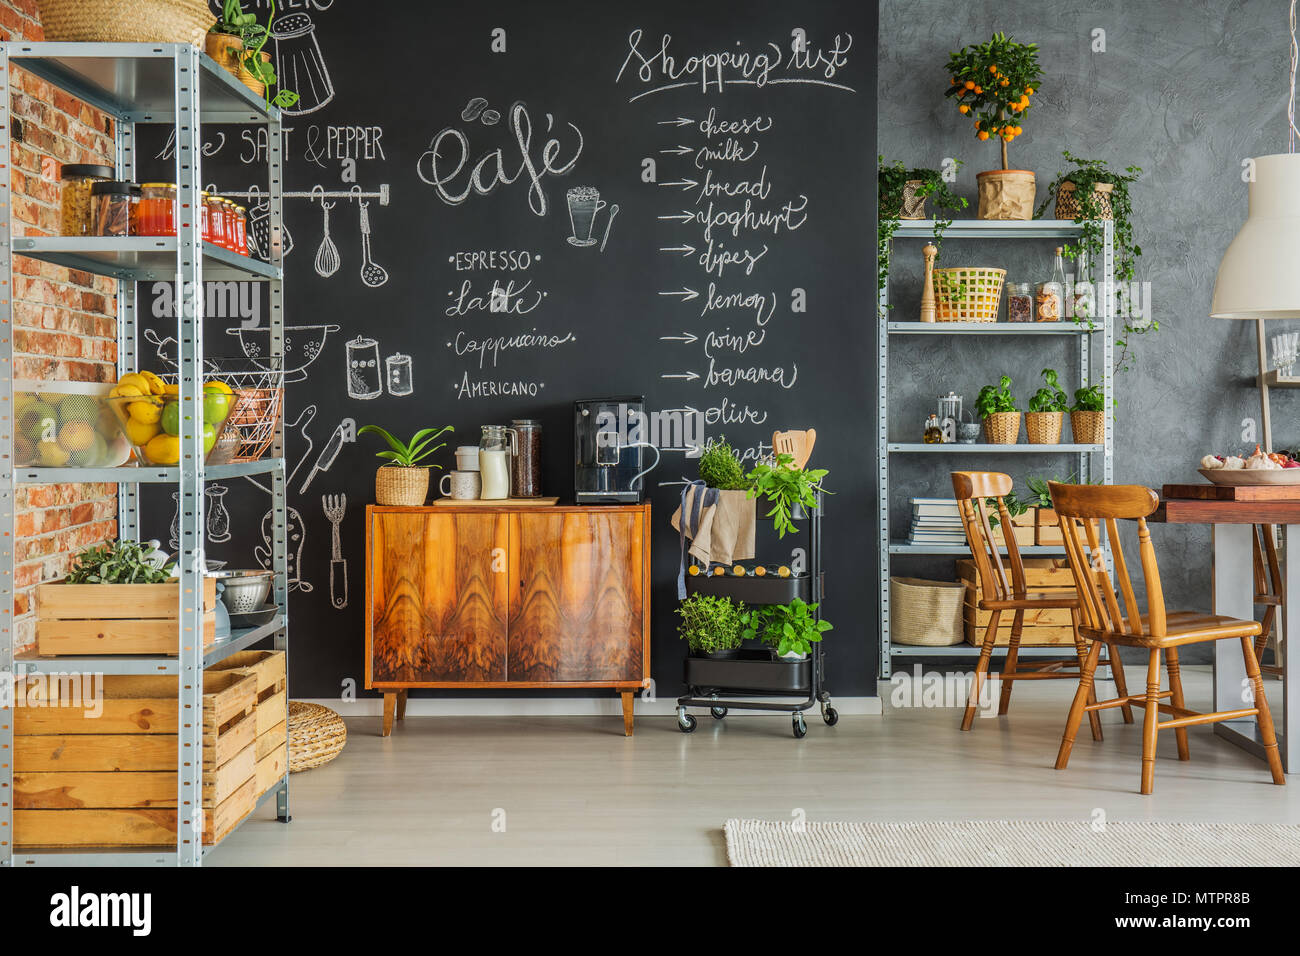 Gemütliche Küche mit Schiefertafel Wand auf dem Dachboden Stockfotografie -  Alamy